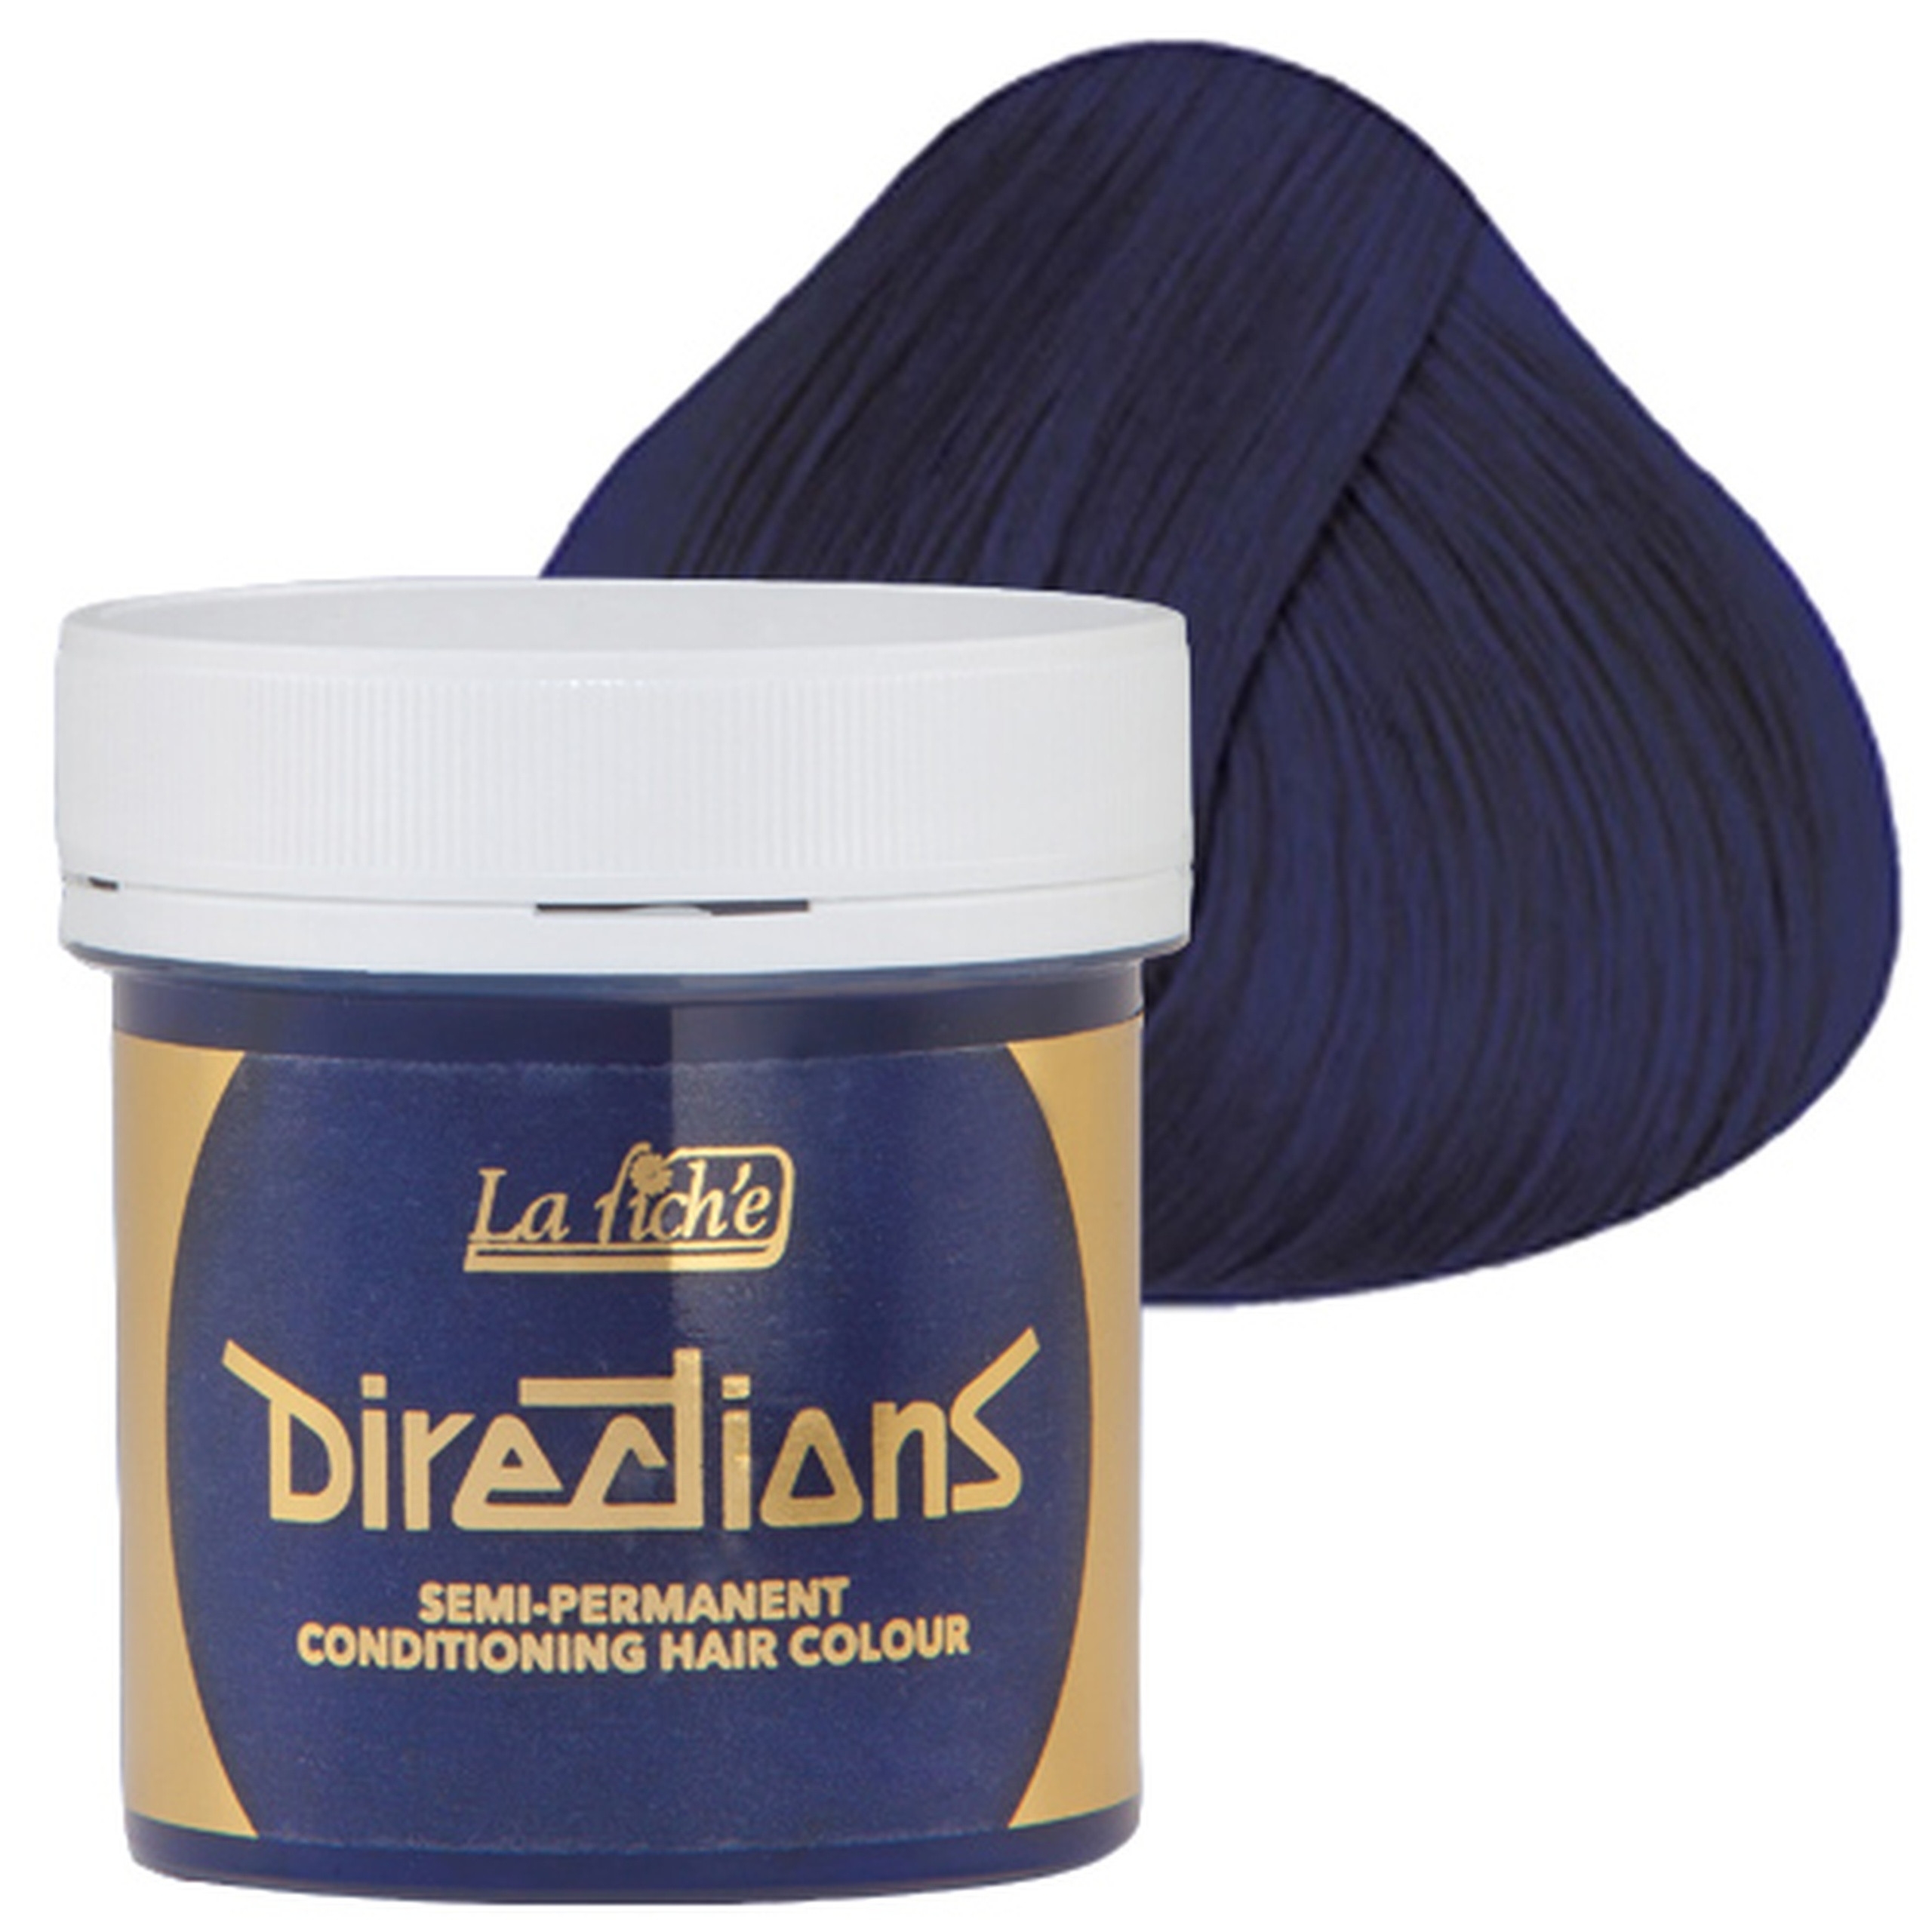 Zdjęcia - Farba do włosów La Riche Directions toner koloryzujący do włosów 88ml Neon Blue 